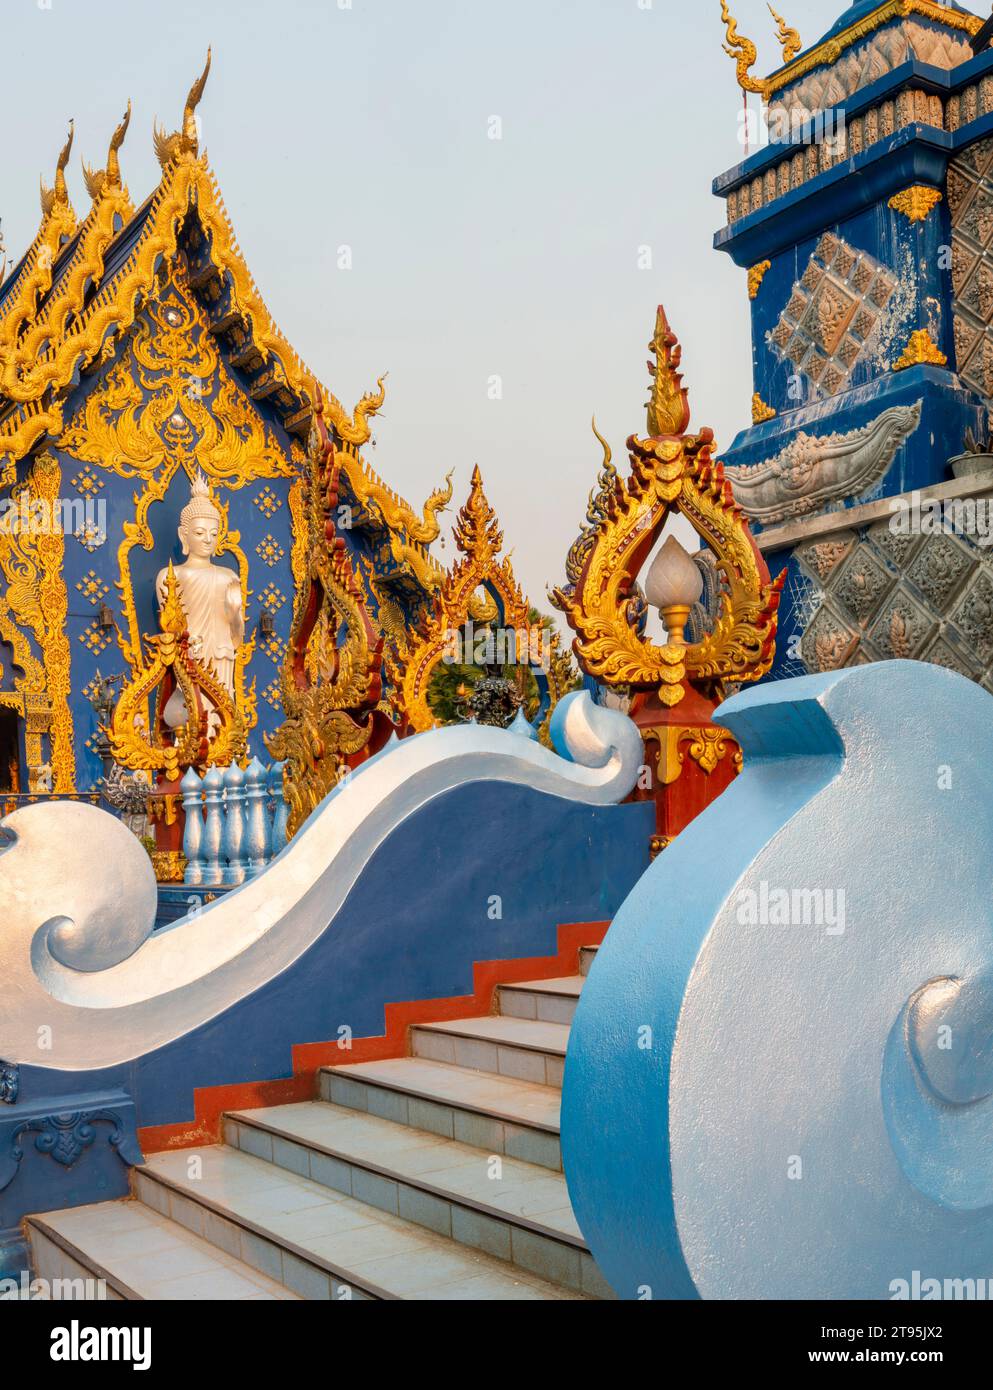 Esterno, splendidamente decorato con disegni blu e oro, statua di Buddha bianco-argento accanto all'ingresso del tempio e calda luce del tramonto che splende Foto Stock